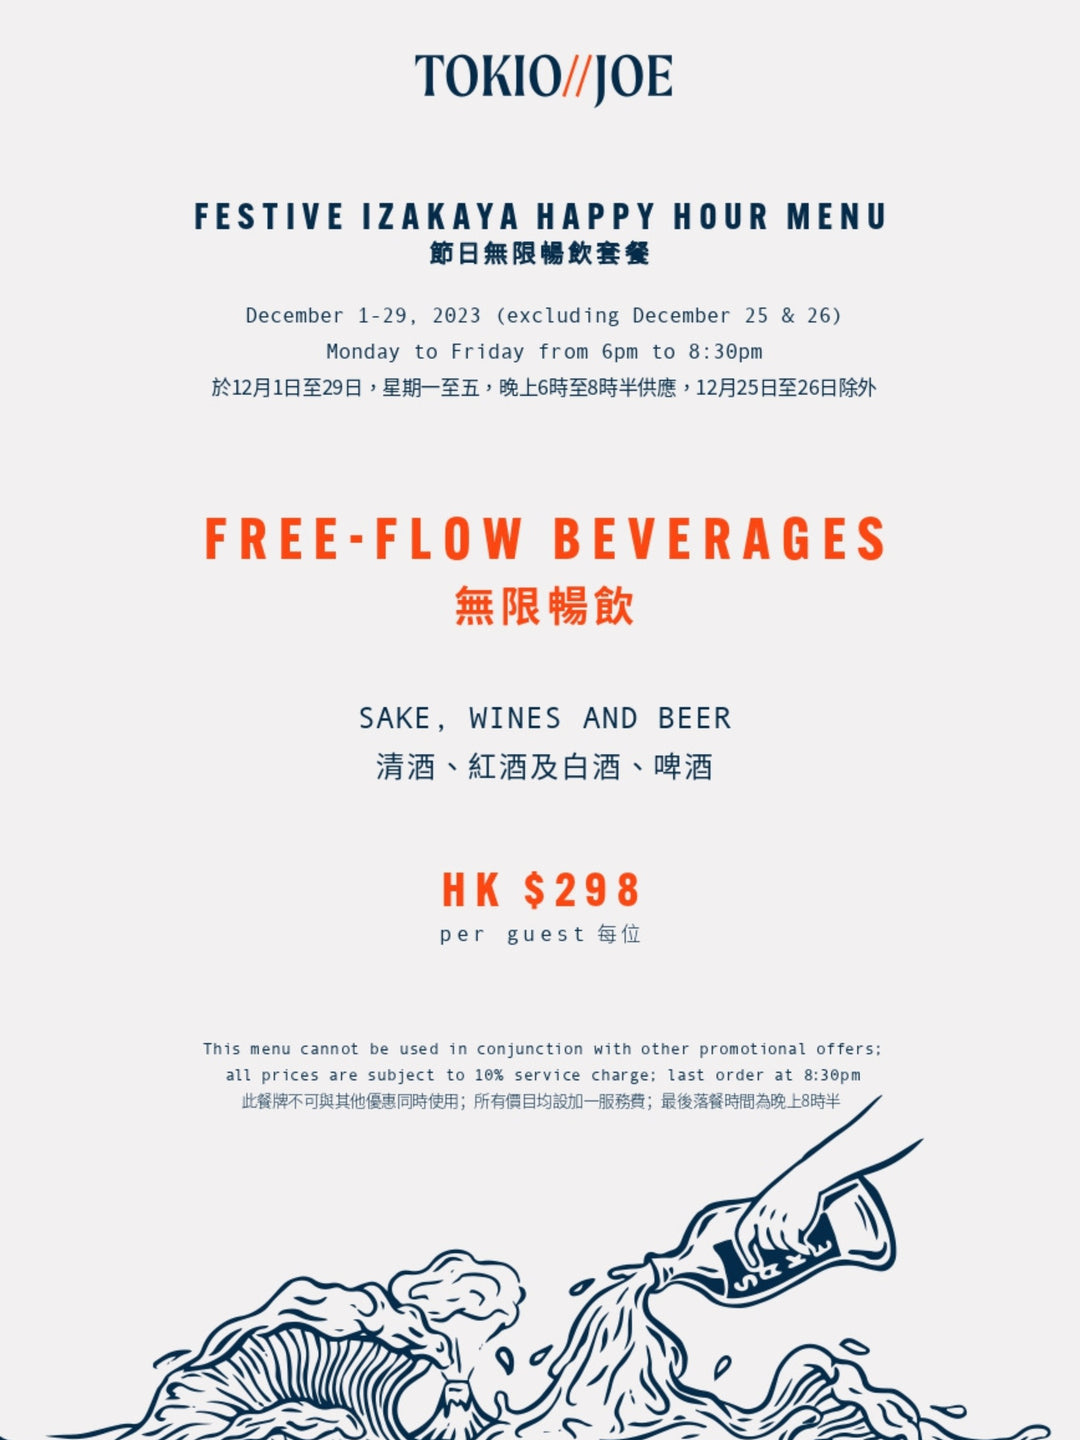 TOKIO JOE FESTIVE FREE-FLOW HAPPY HOUR PACKAGE